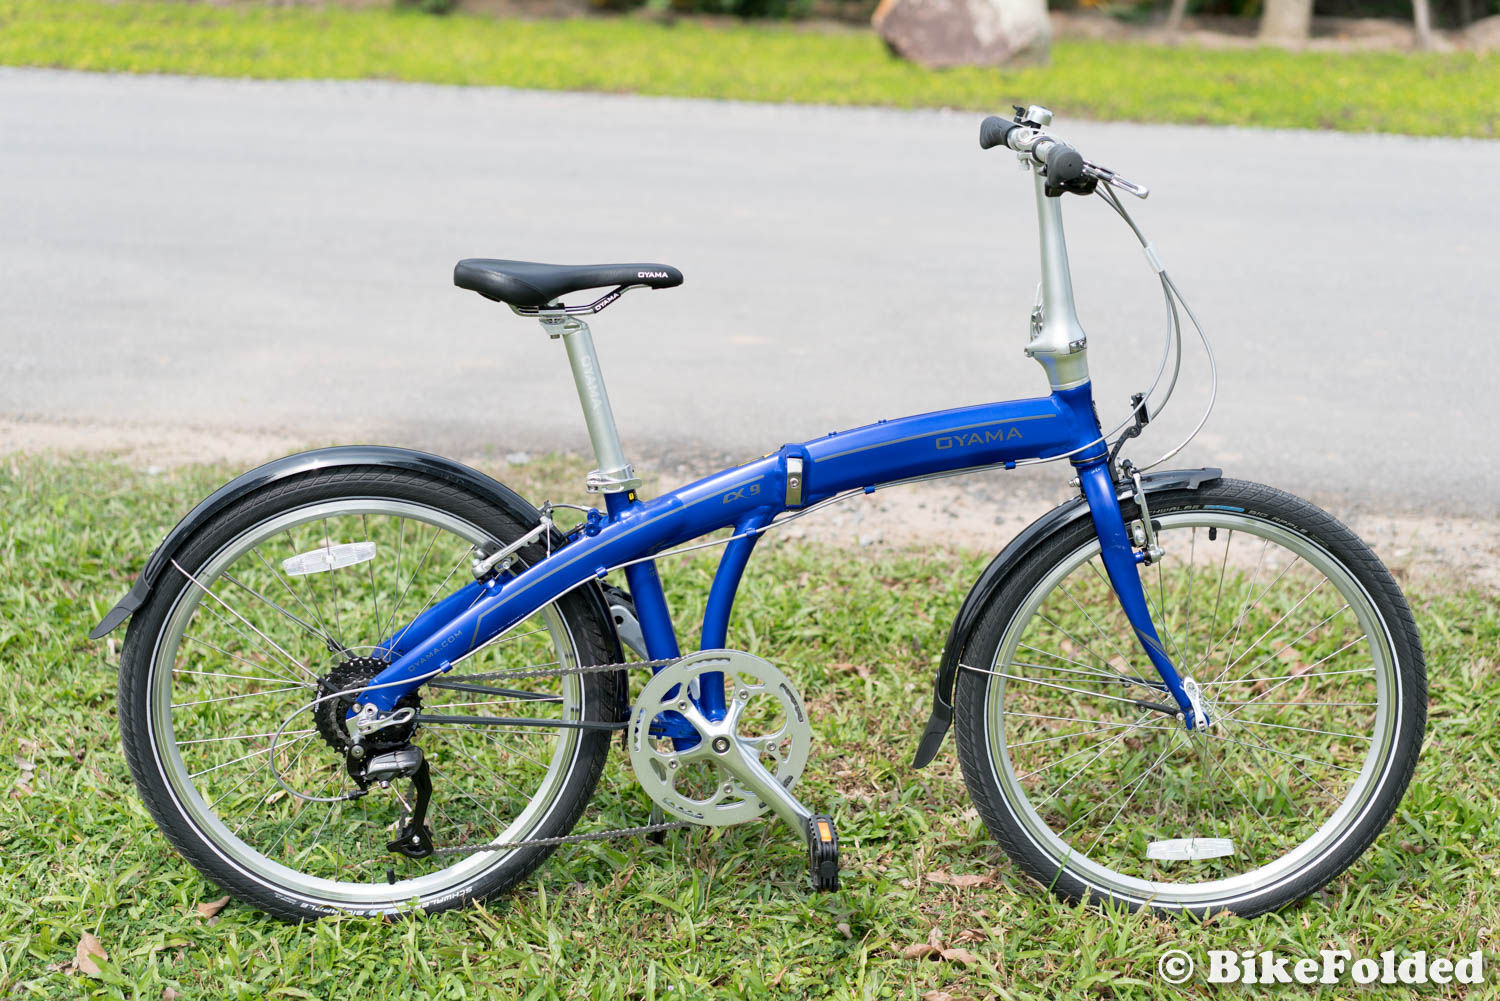 24 inch wheel folding bike